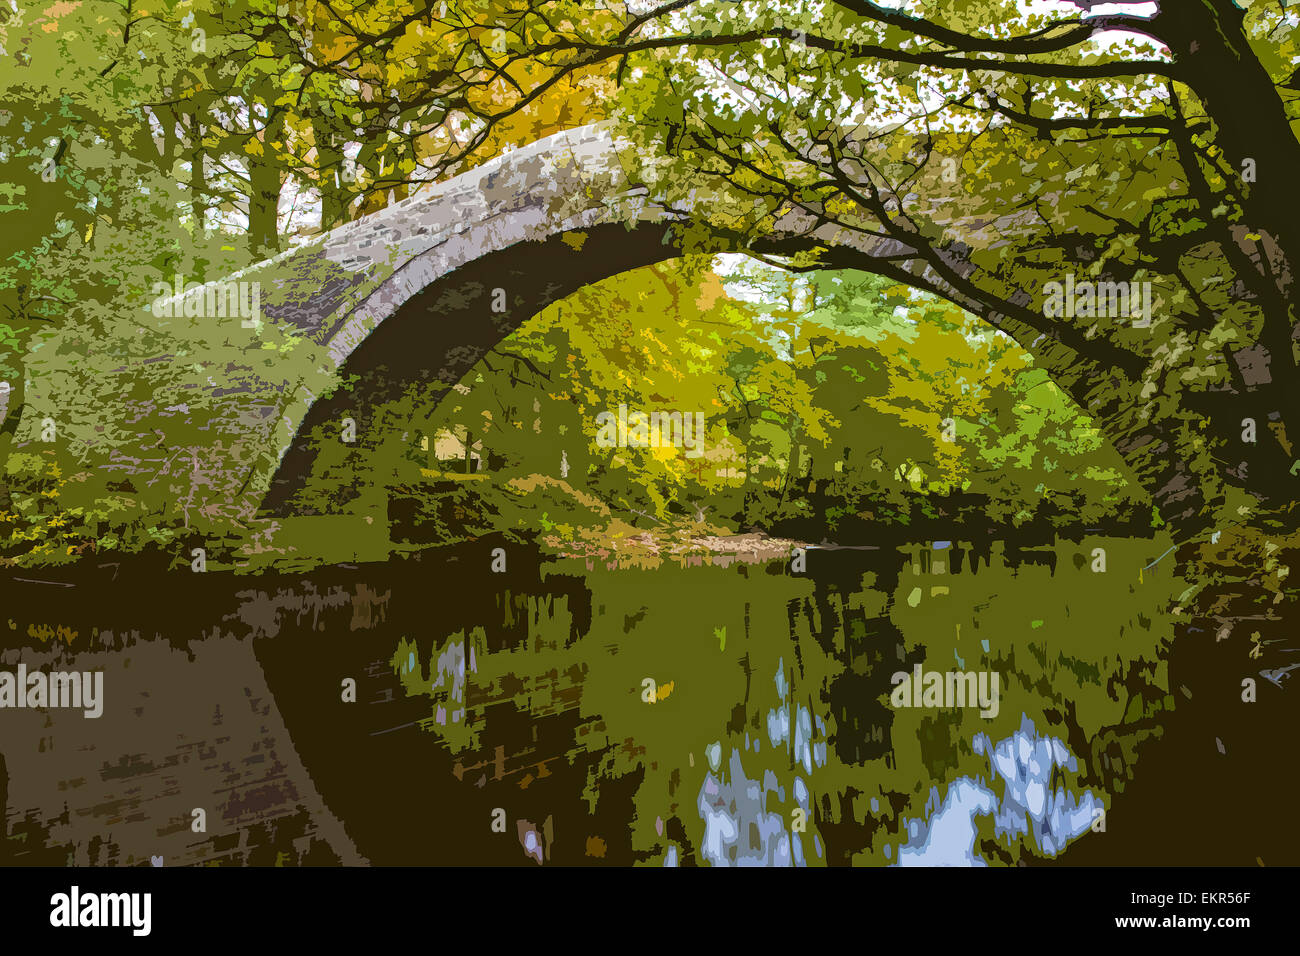 Eine Plakat Stil Darstellung der Ivelet Brücke überquert die Fluß Senke in der Nähe von Ivelet, Yorkshire Dales National Park, England, UK Stockfoto